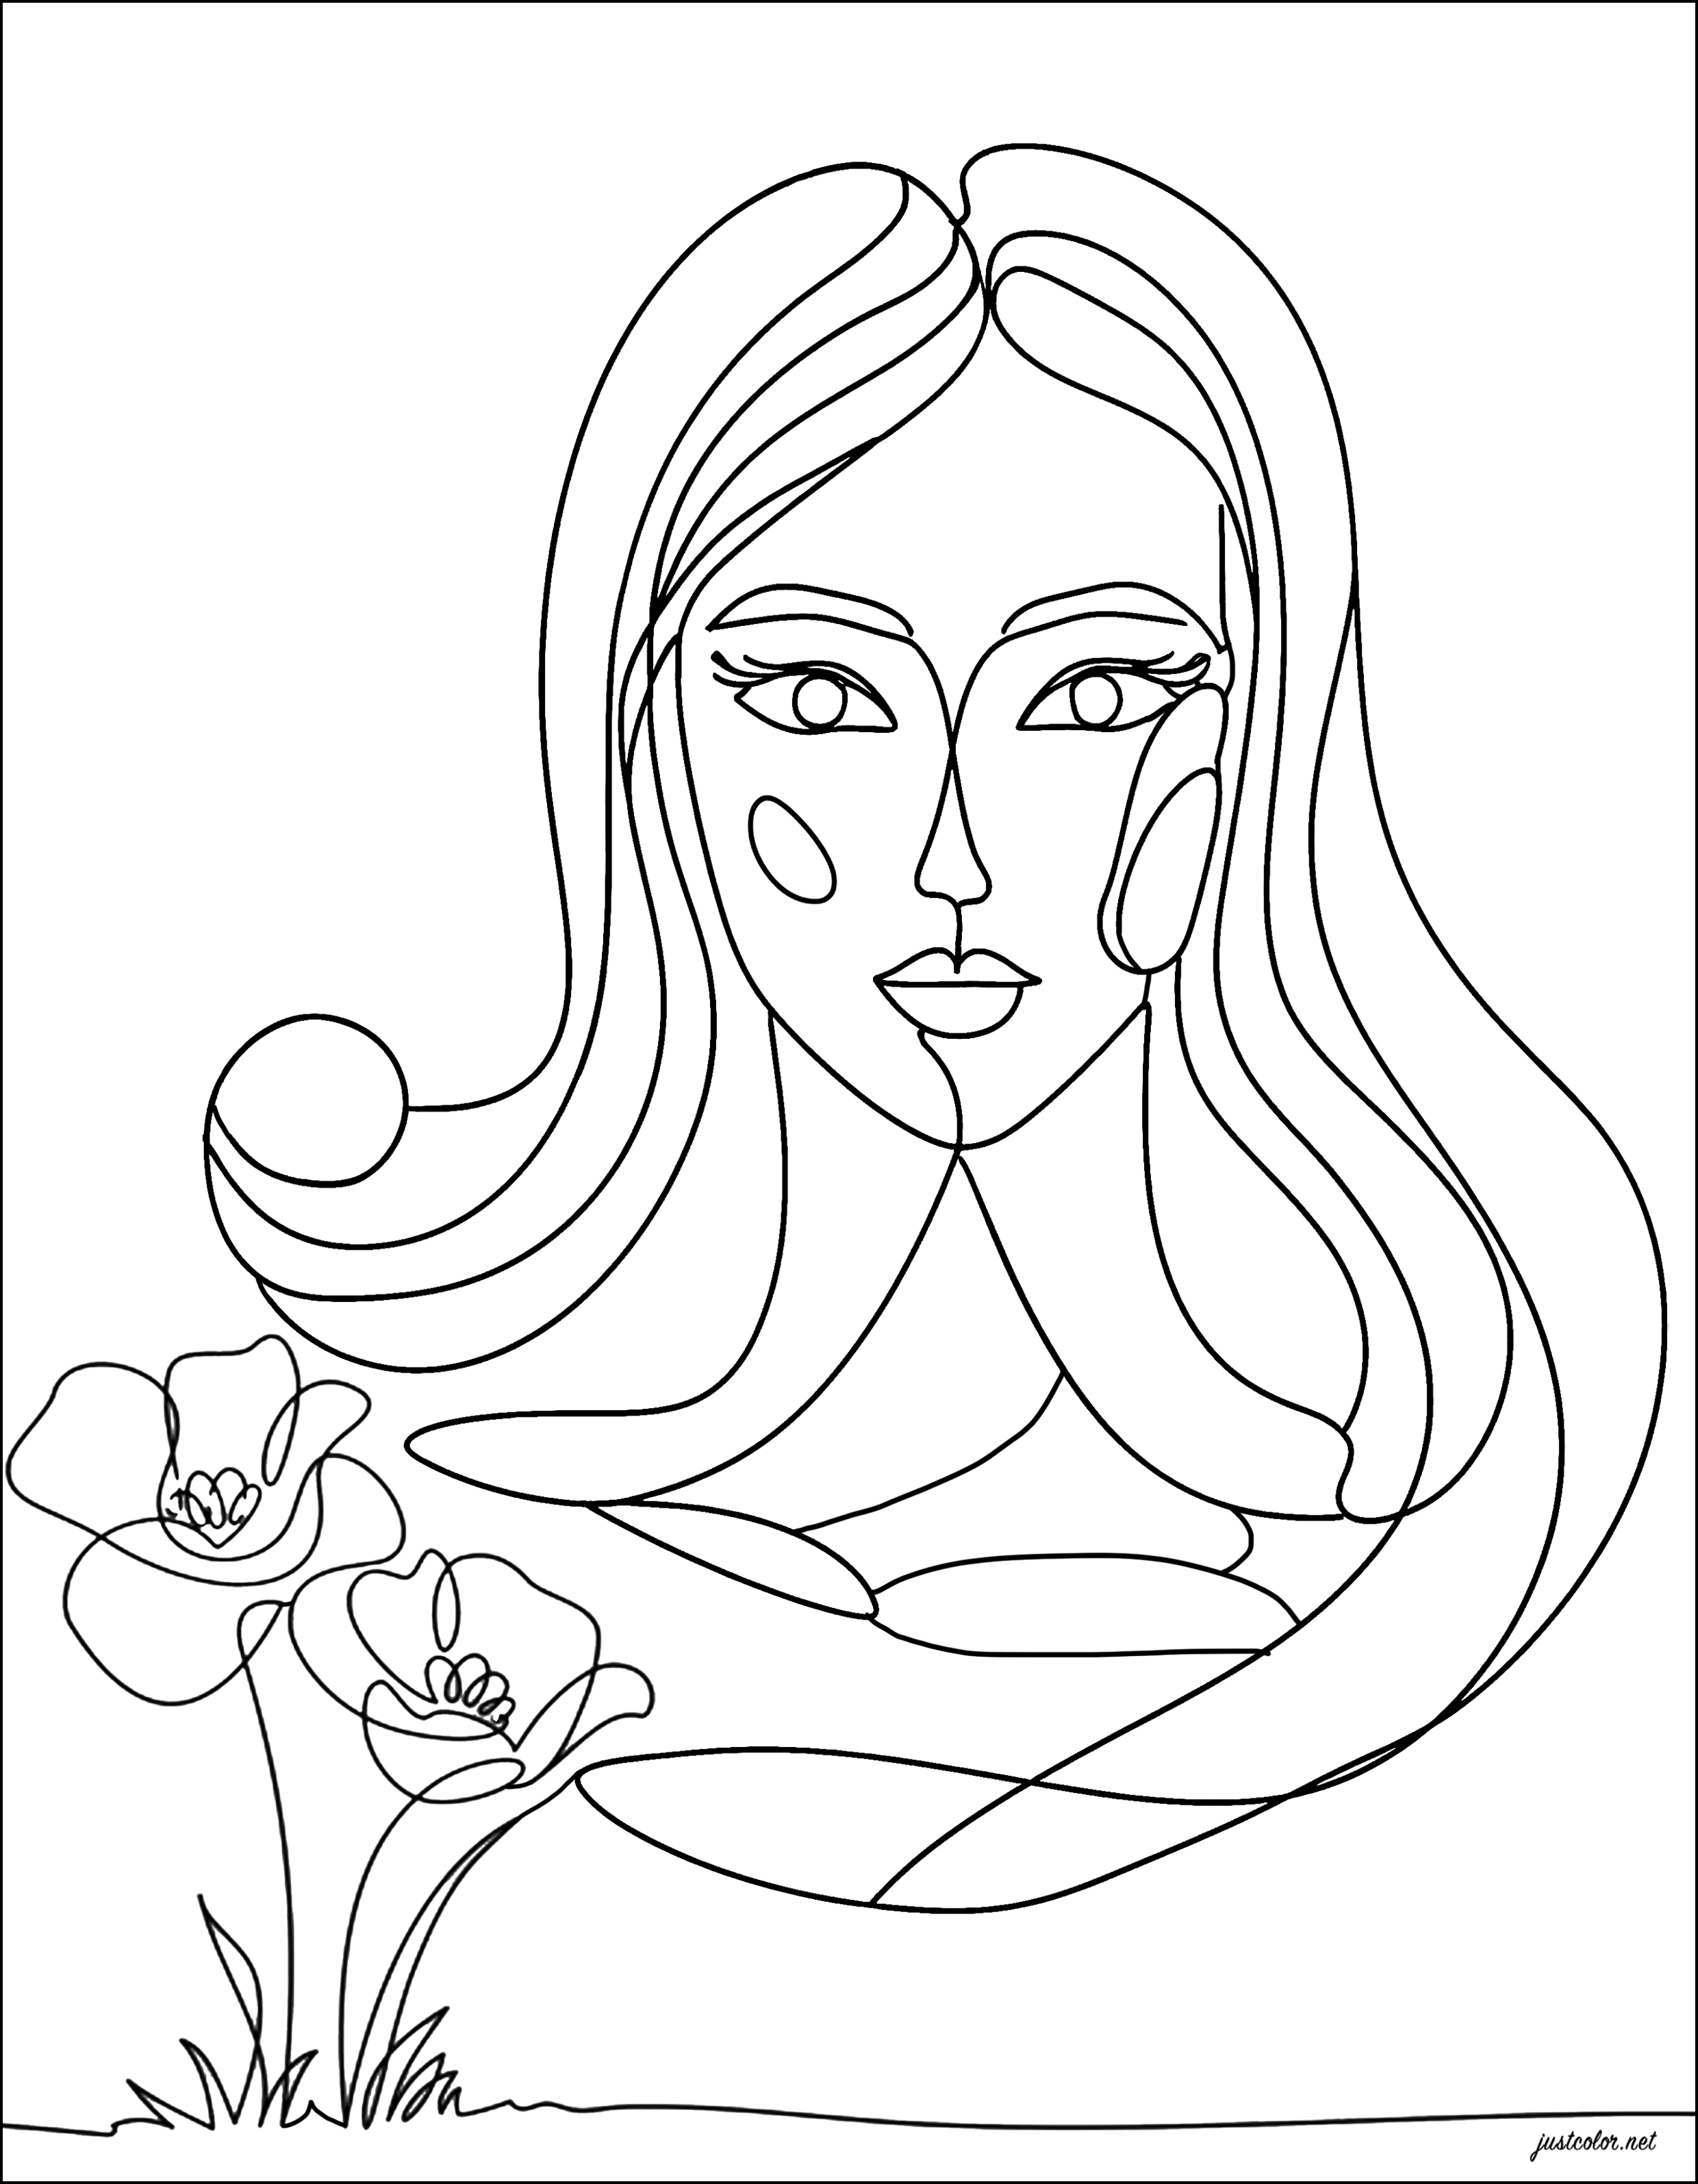 Femme et fleurs (Line art). Le line art est une technique artistique consistant à créer des images en utilisant uniquement des lignes, sans ajouter de couleur ou de remplissage.